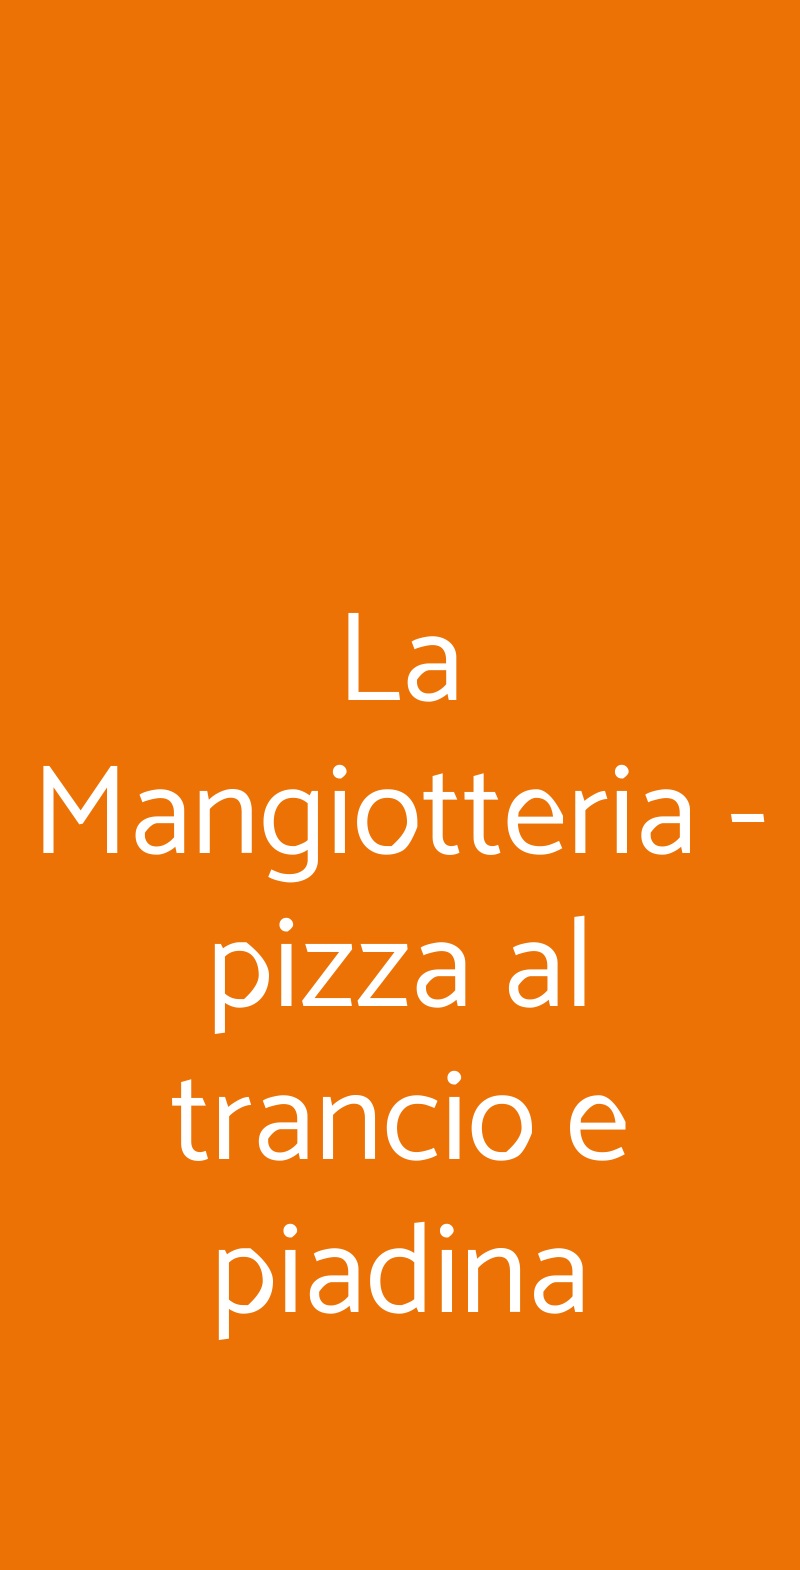 La Mangiotteria - pizza al trancio e piadina Milano menù 1 pagina